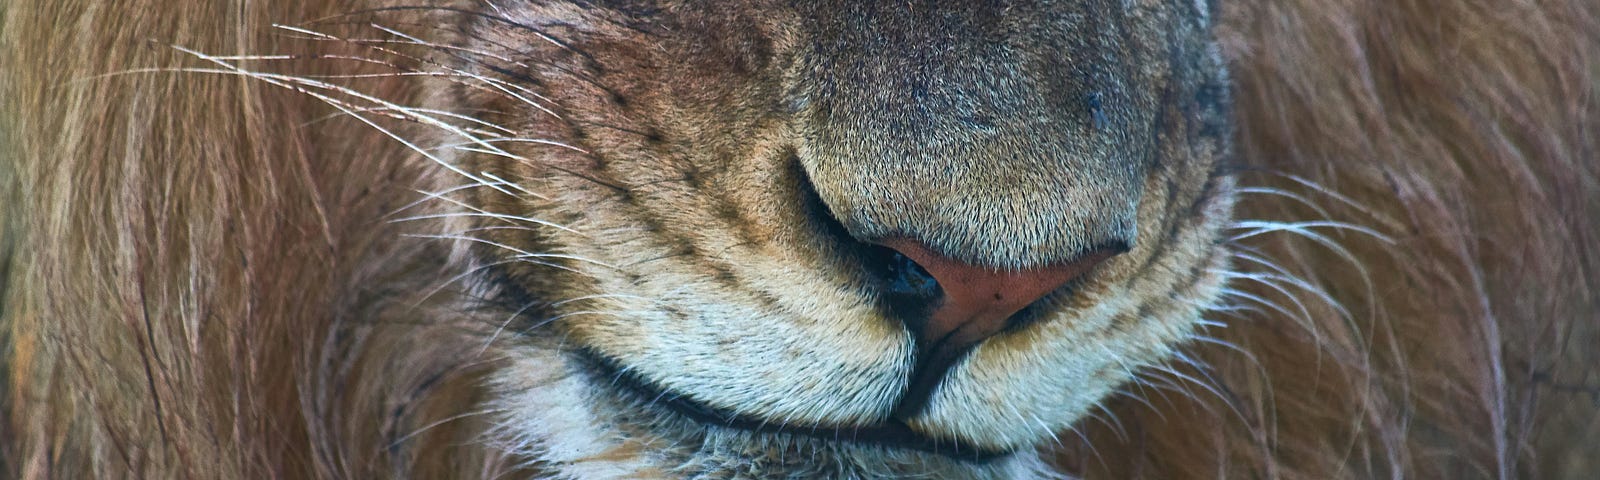 Close-up of a lion’s snout.